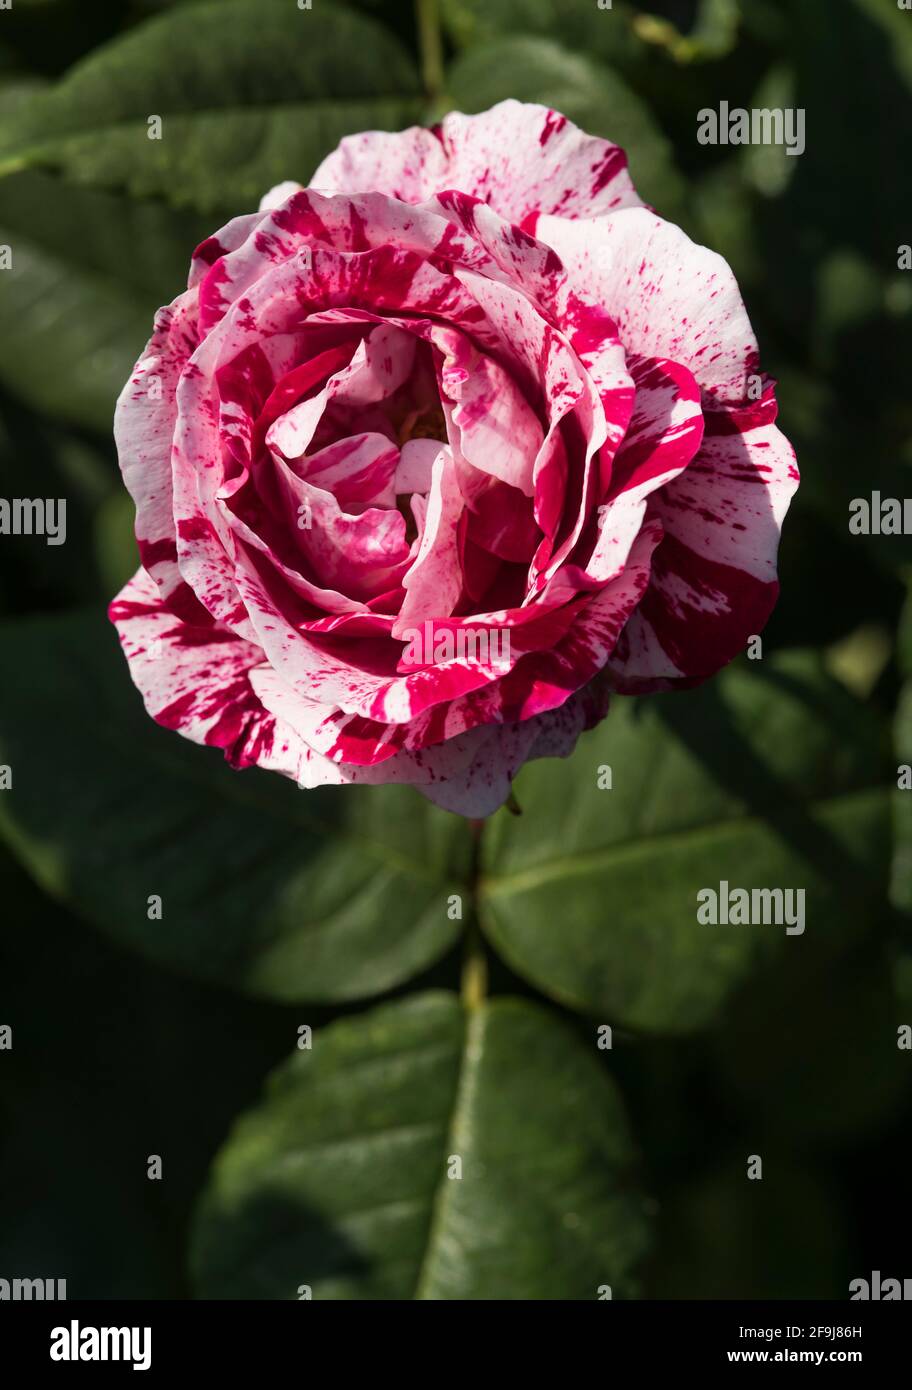 Gros plan d'une rose d'arlequin blanc et rouge Photo Stock - Alamy